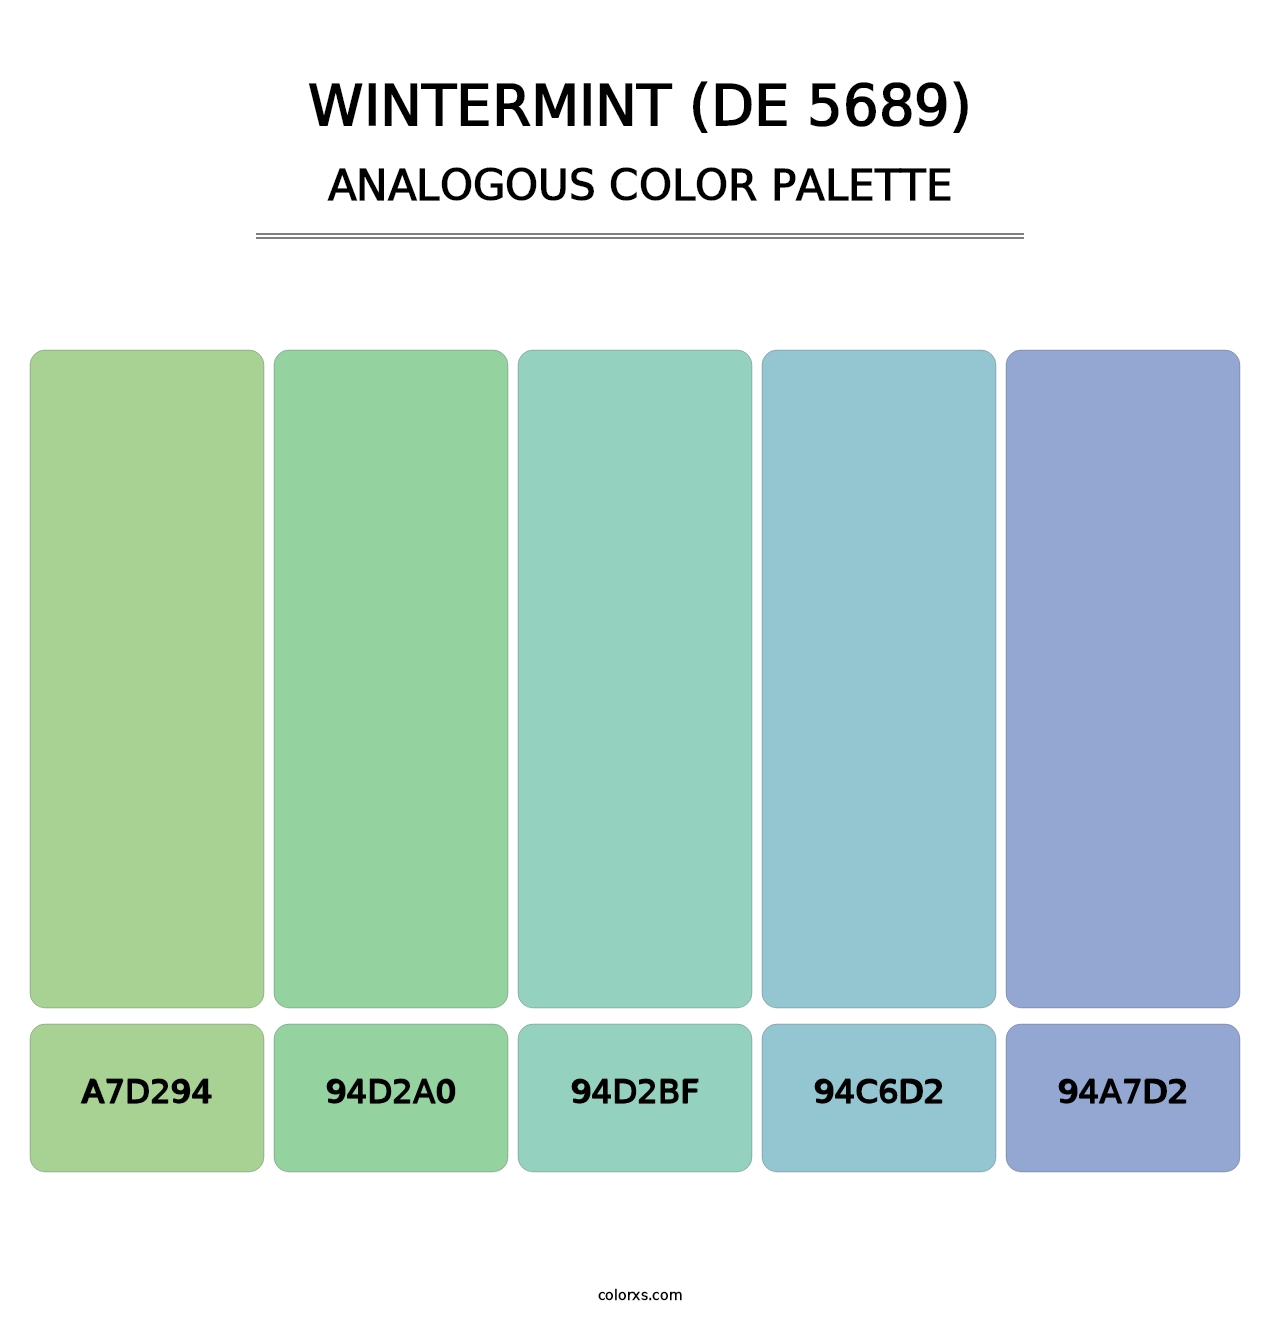 Wintermint (DE 5689) - Analogous Color Palette